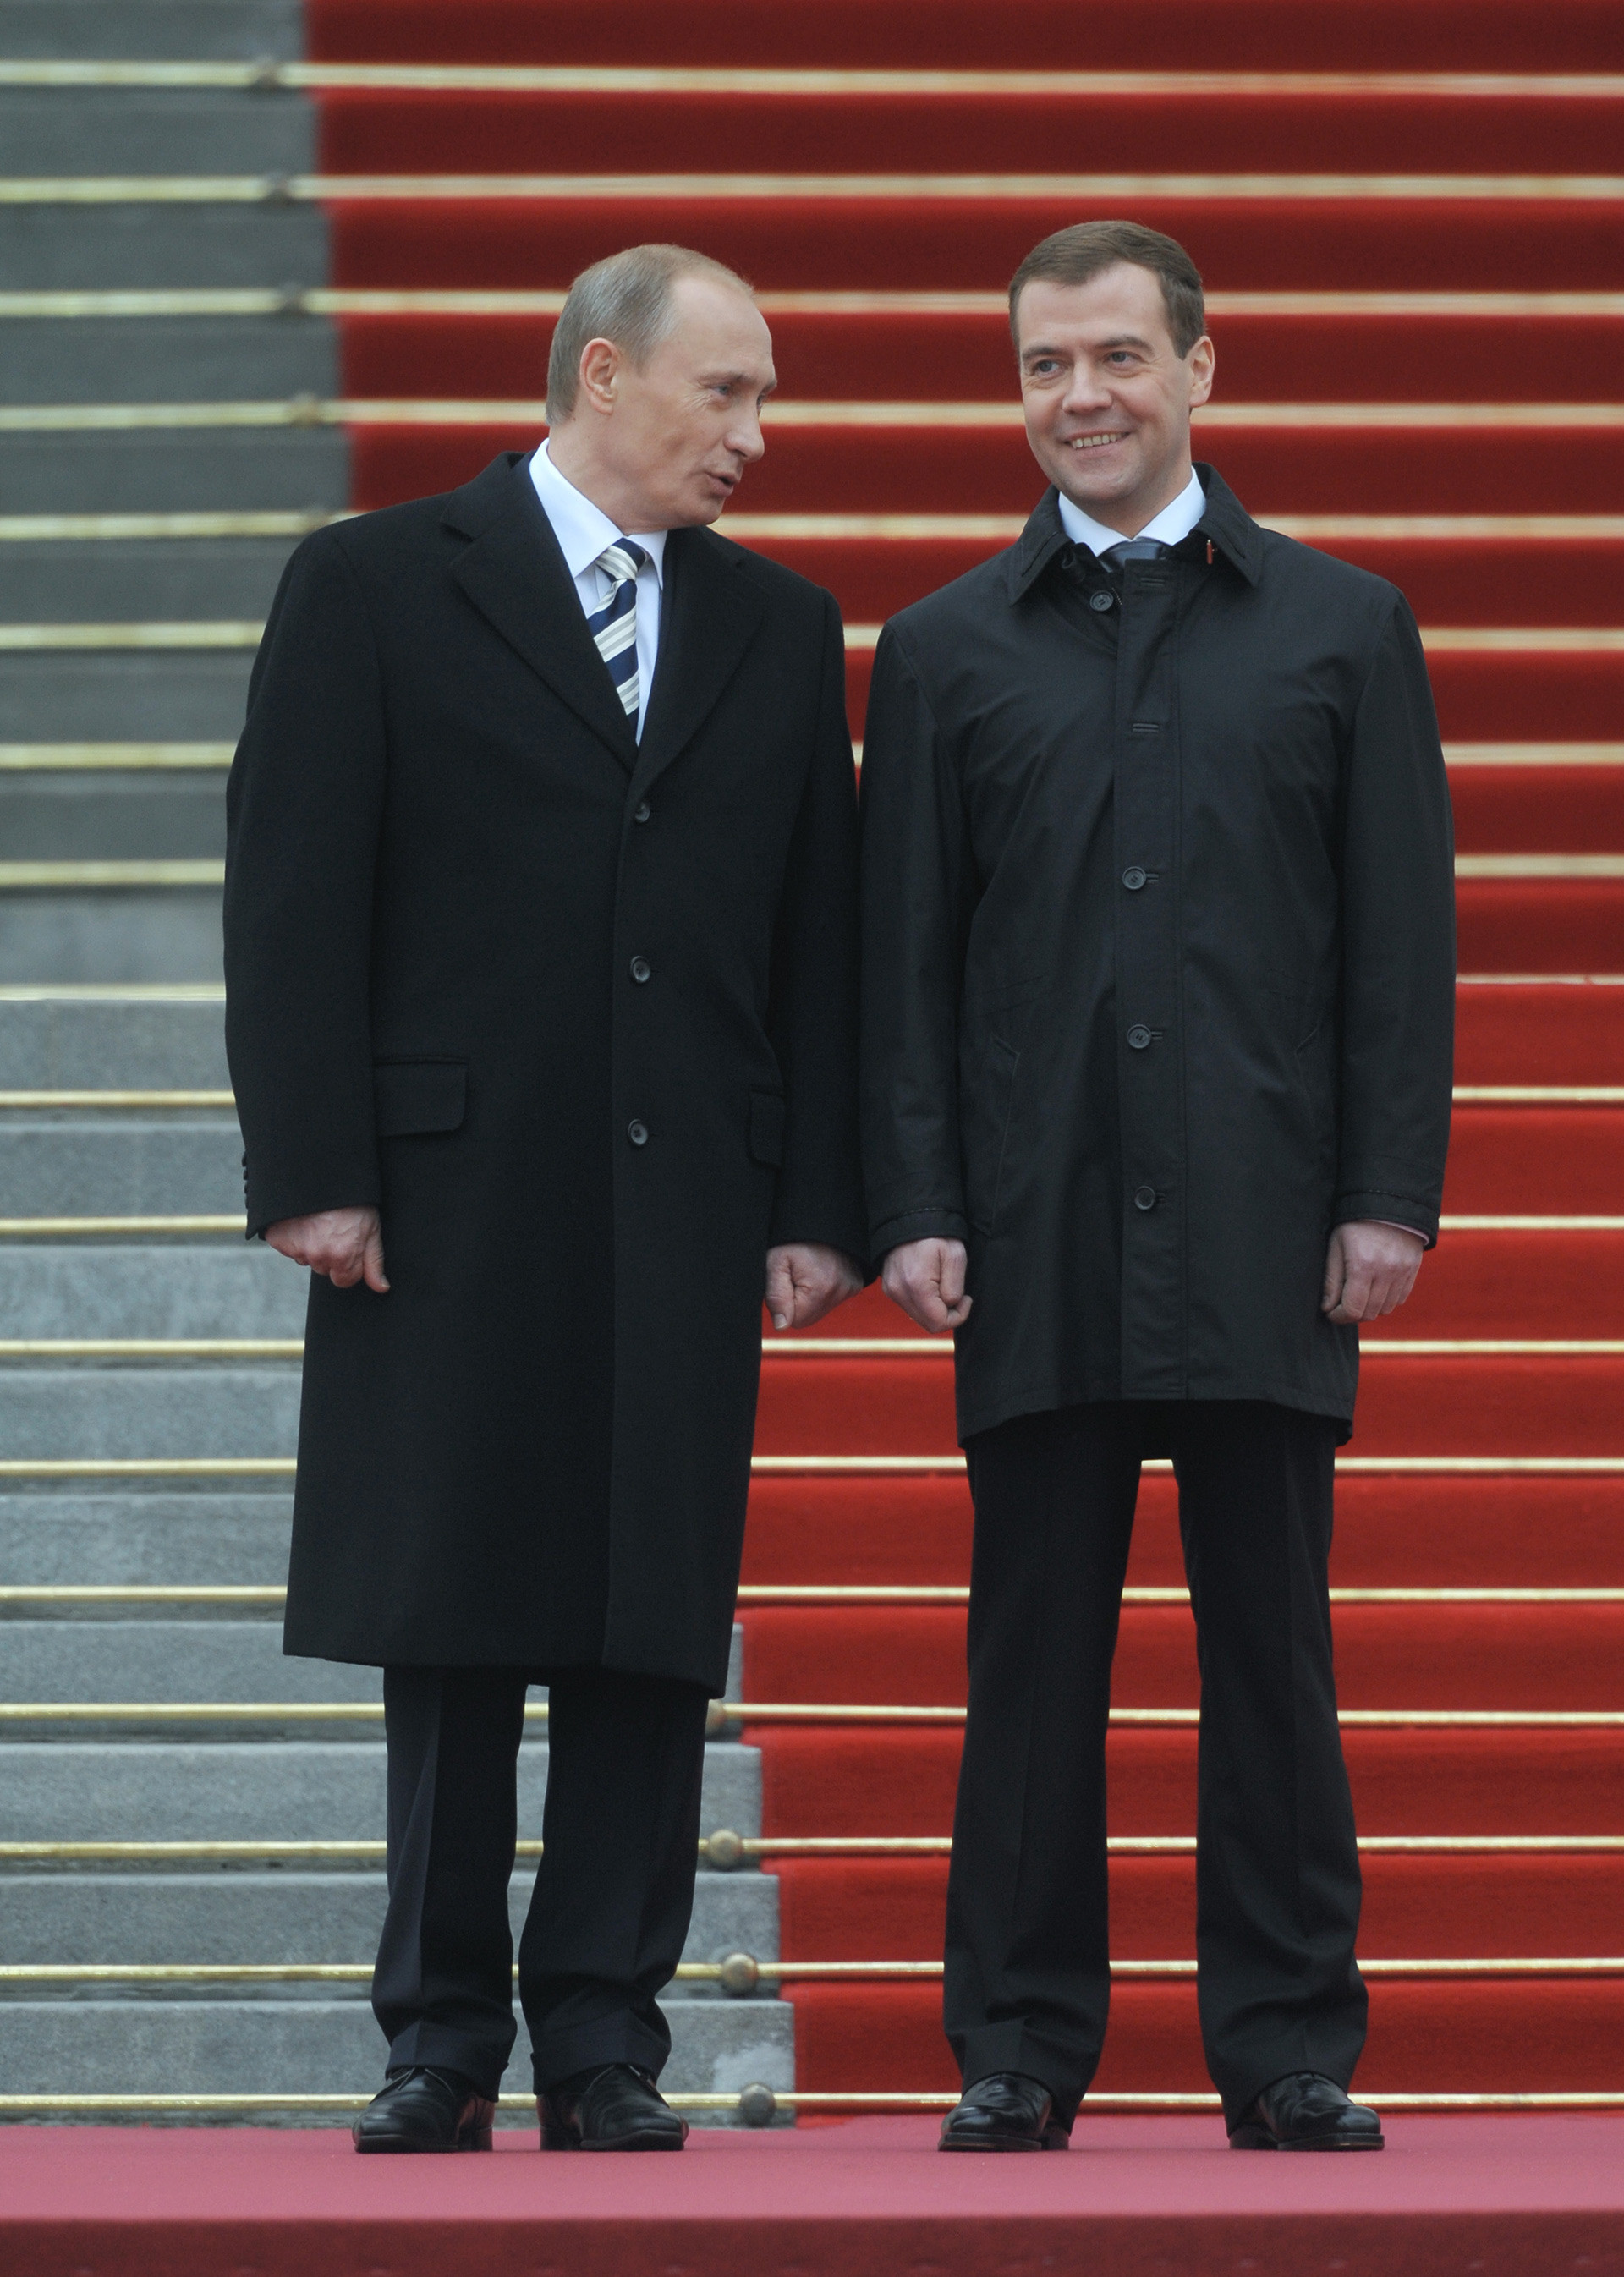 Медведев и путин рядом фото в полный рост